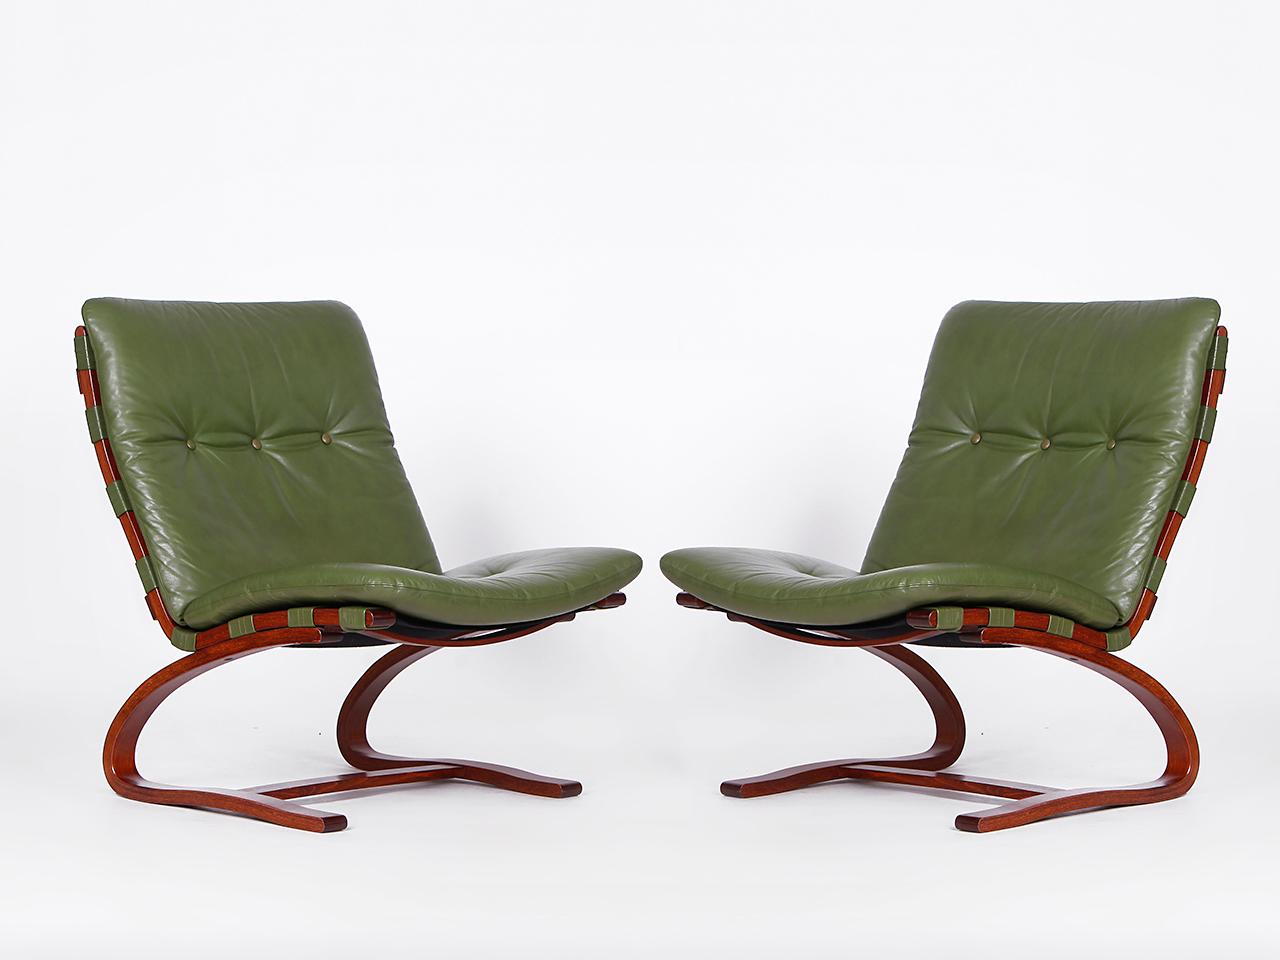 Ces 4  Les chaises en cuir Mic-Century des années 1960 sont dans un état d'origine exceptionnellement bon.
L'ancienne couverture en cuir d'un vert élégant a manifestement été très peu utilisée. Ingmar Relling est
considérée comme une icône du design